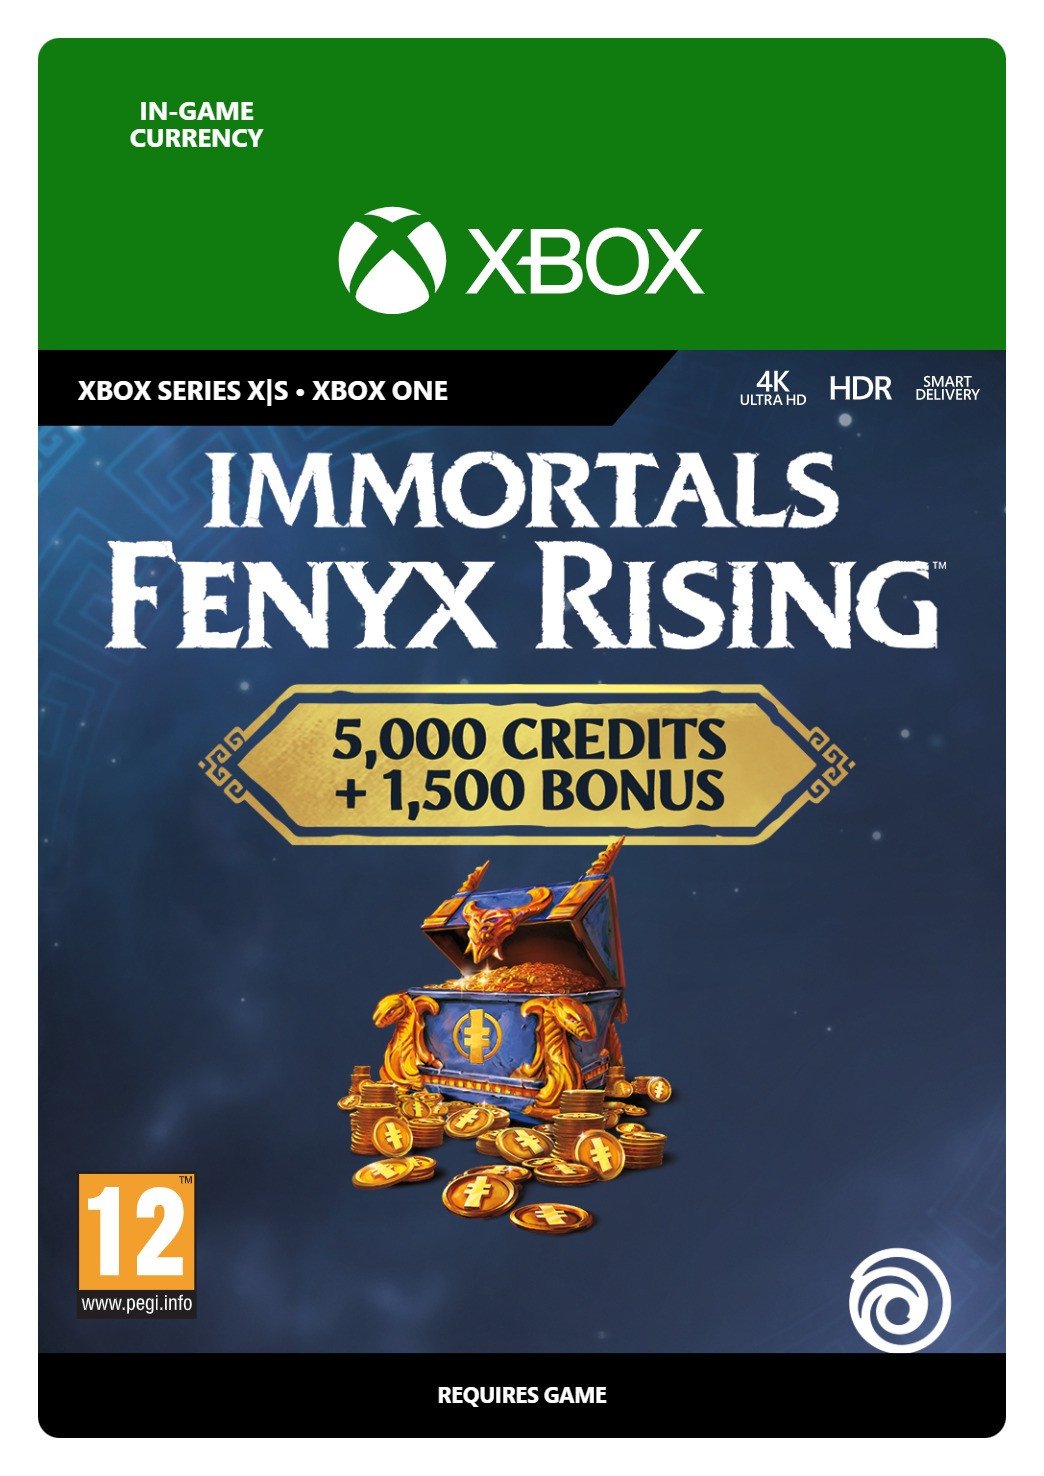 IMMORTALS FENYX RISING™ - Pacchetto Crediti immenso von Ubisoft